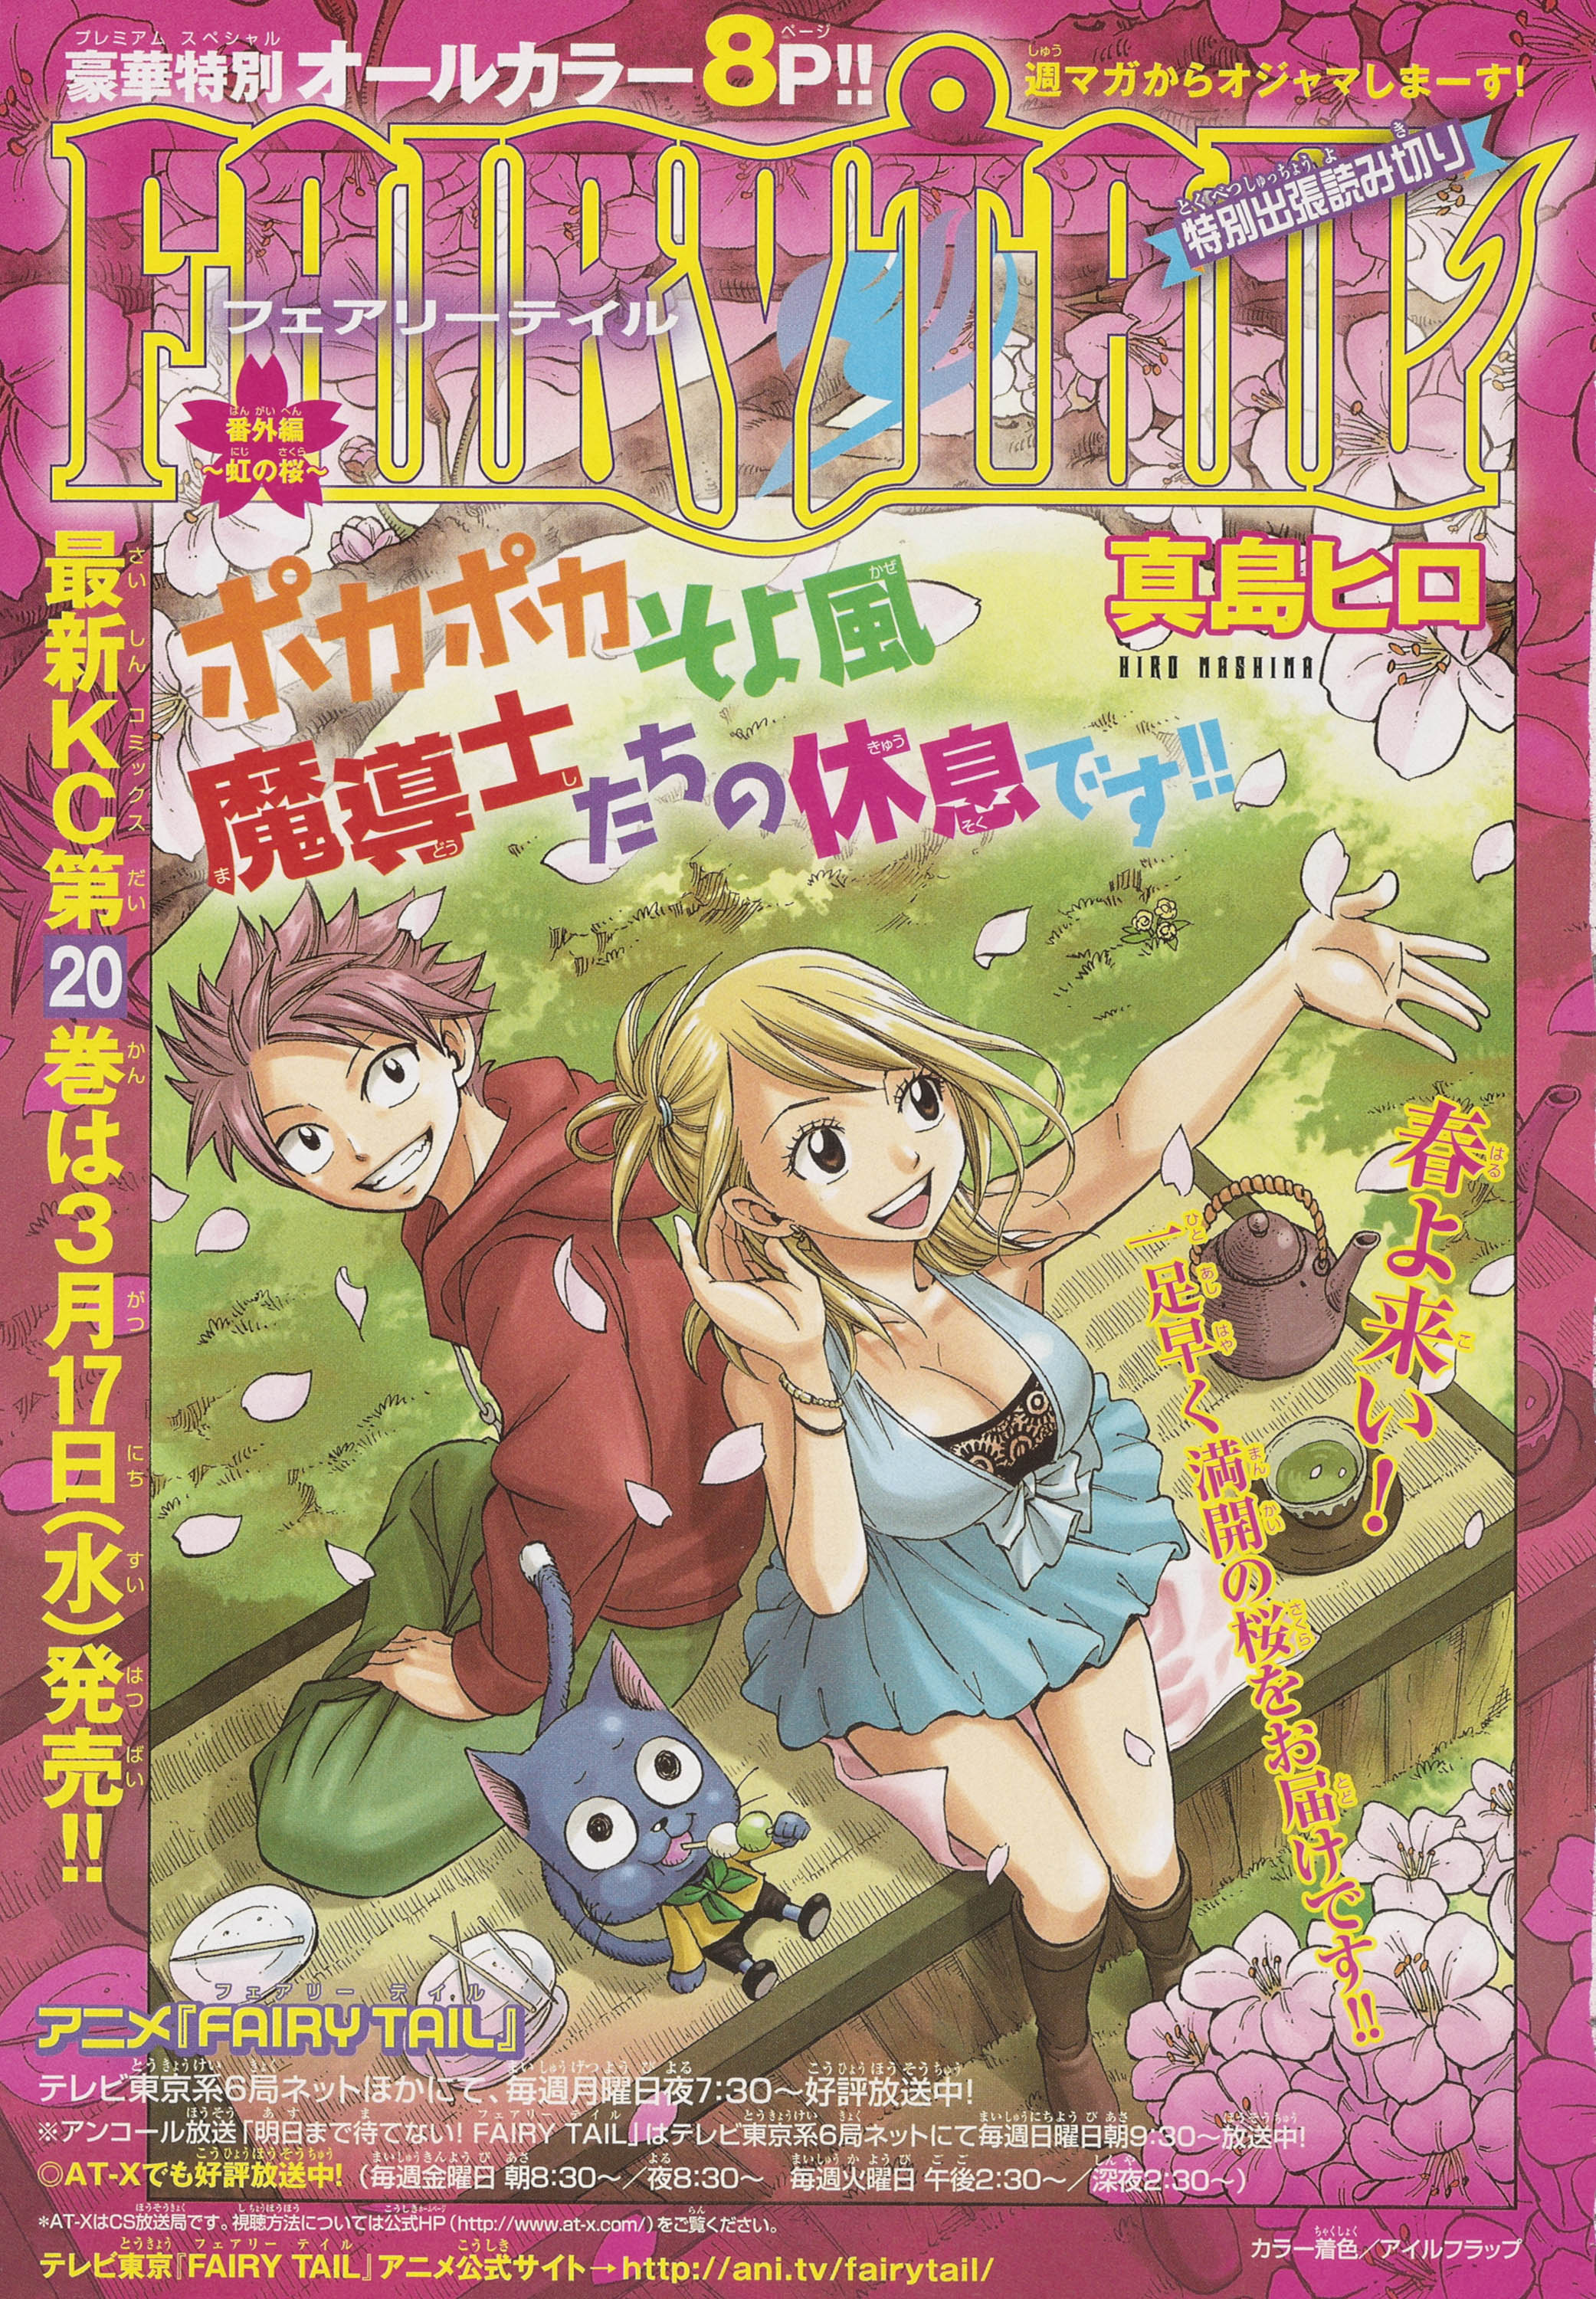 Rainbow Sakura (Chapter) | Fairy Tail Wiki | Fandom